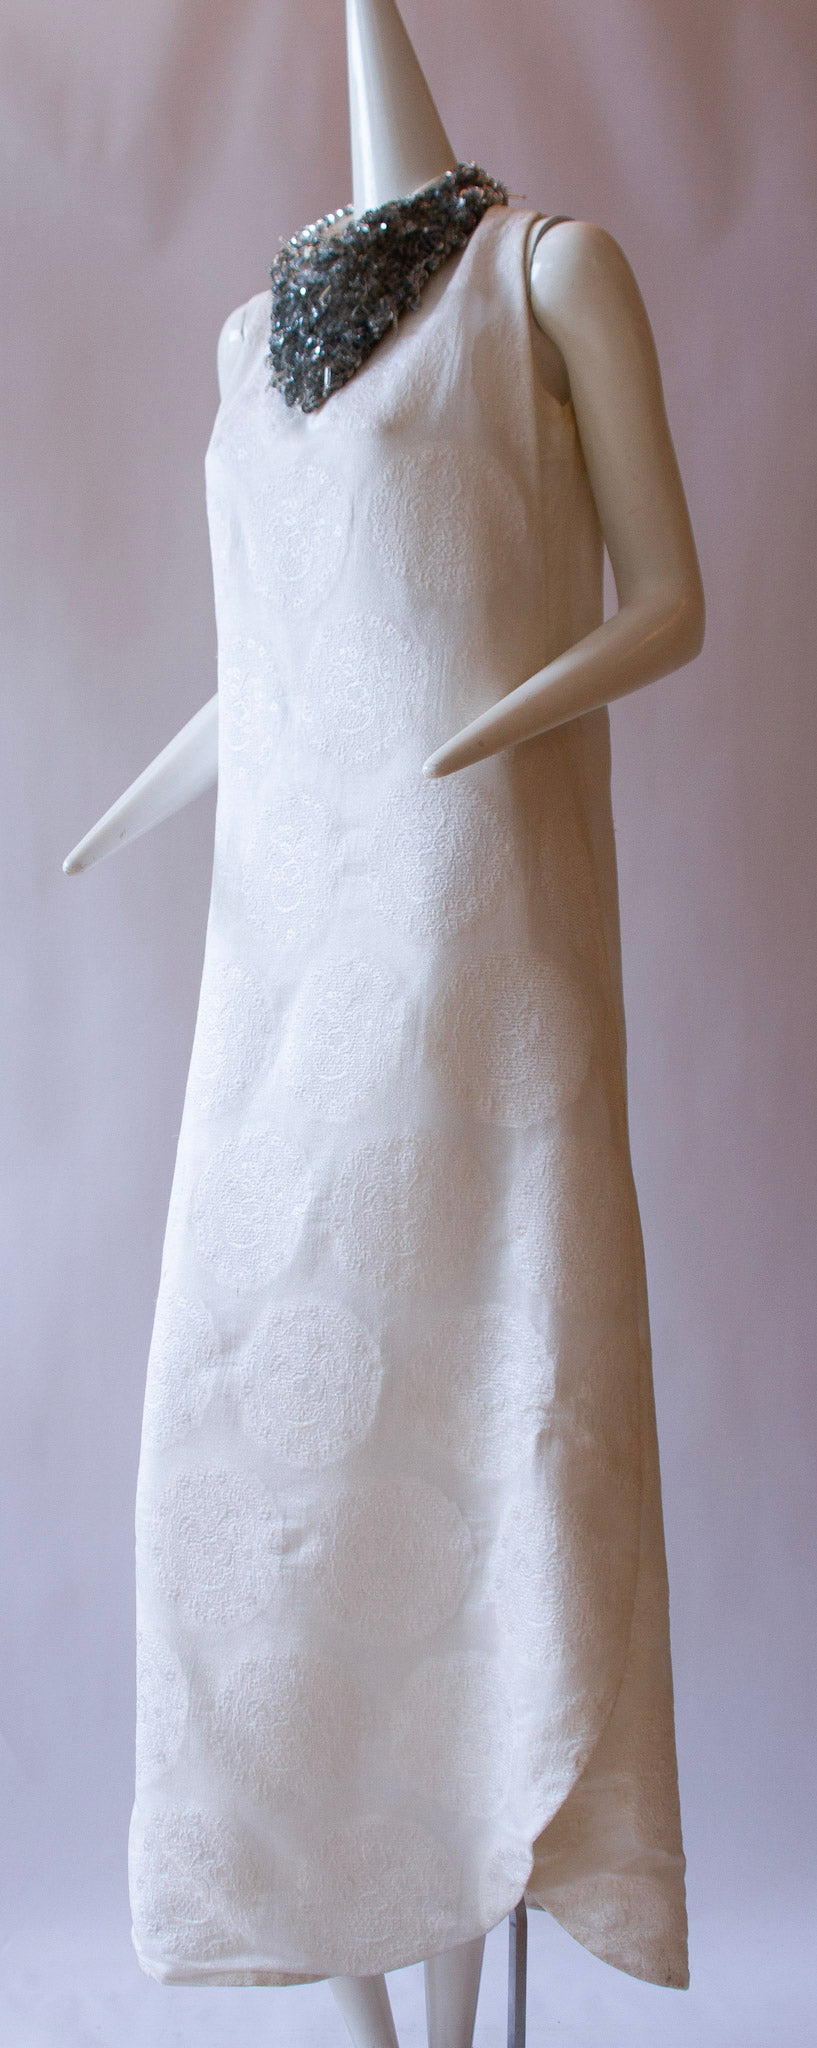 Pierre Cardin Paris "Collection" dress